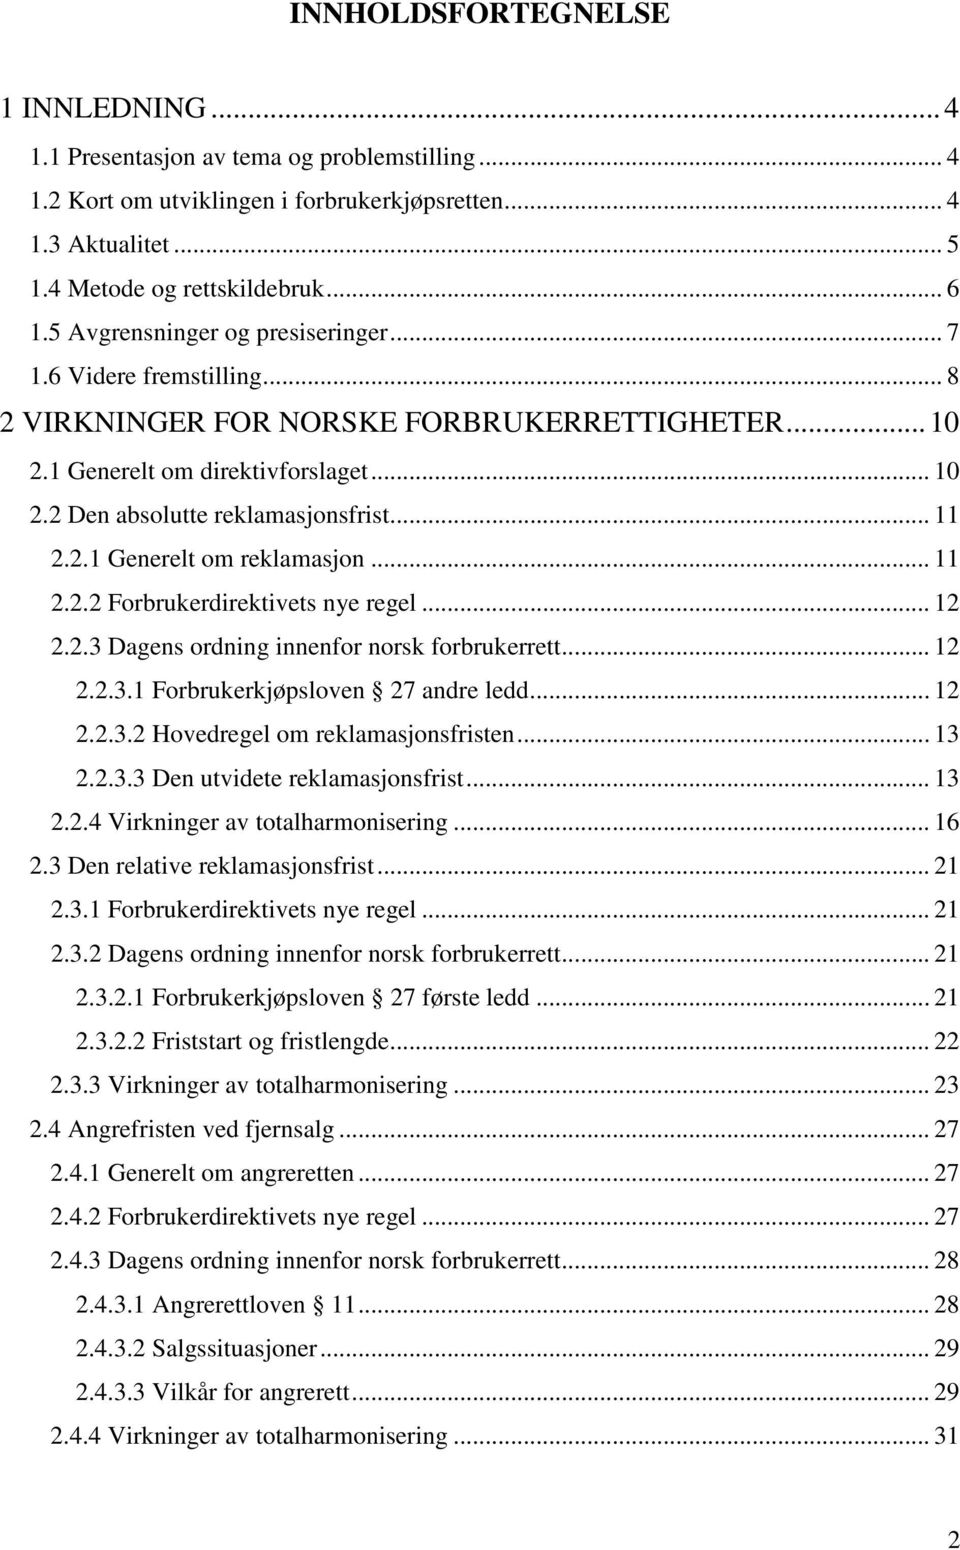 2.1 Generelt om reklamasjon... 11 2.2.2 Forbrukerdirektivets nye regel... 12 2.2.3 Dagens ordning innenfor norsk forbrukerrett... 12 2.2.3.1 Forbrukerkjøpsloven 27 andre ledd... 12 2.2.3.2 Hovedregel om reklamasjonsfristen.